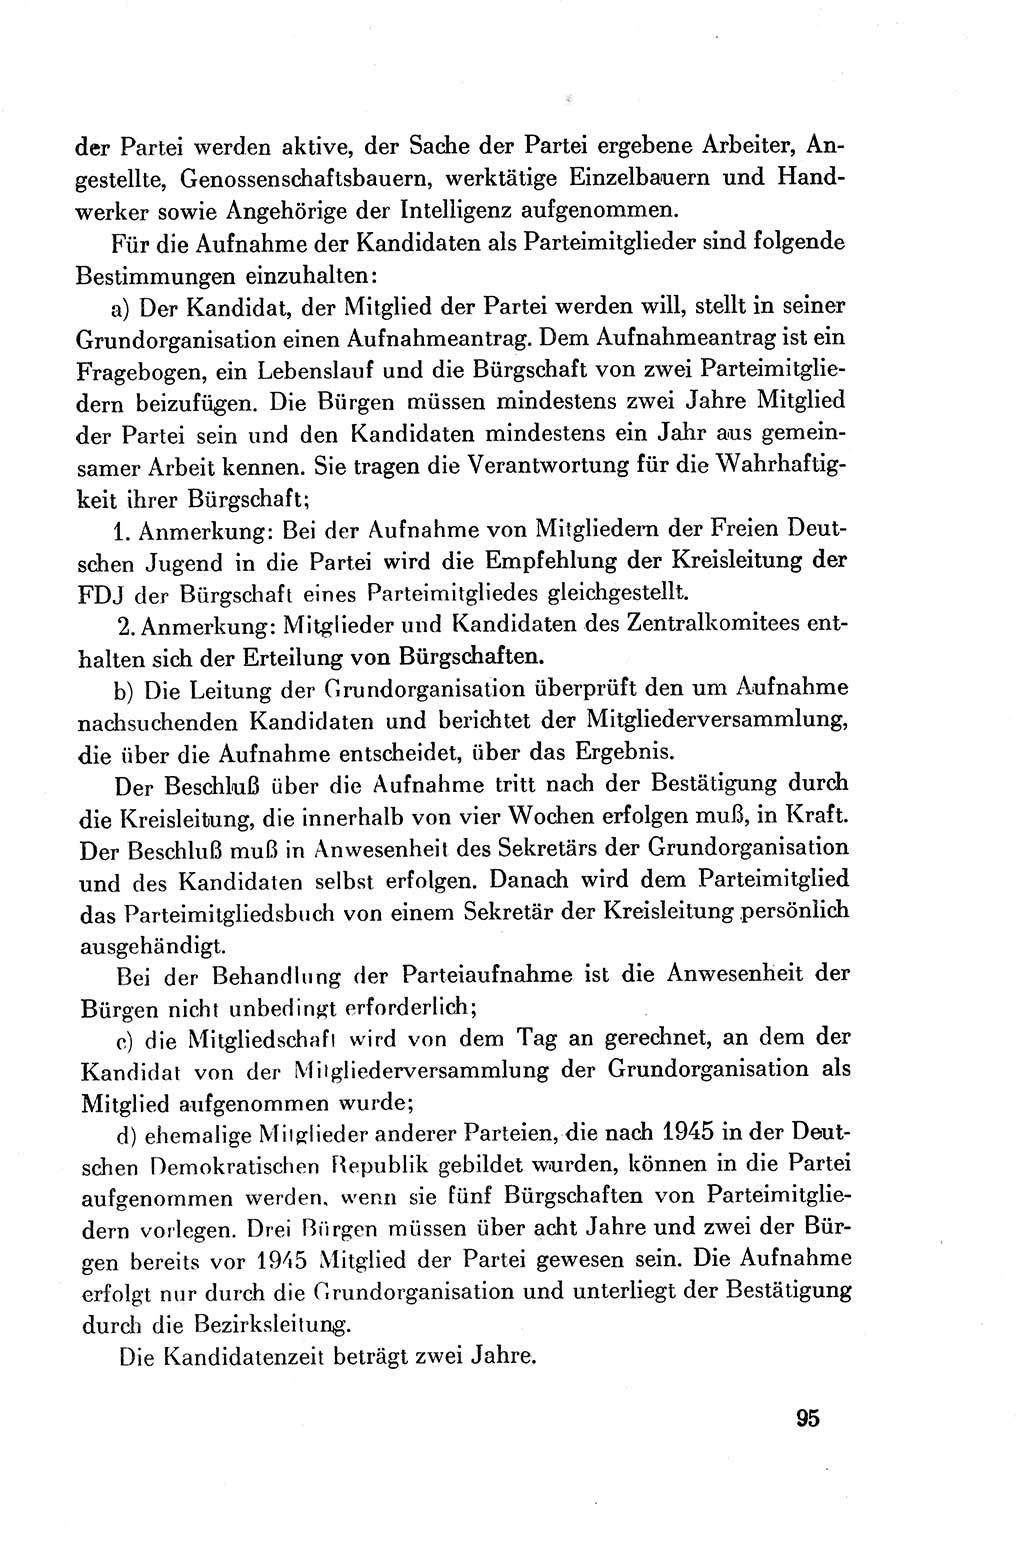 Dokumente der Sozialistischen Einheitspartei Deutschlands (SED) [Deutsche Demokratische Republik (DDR)] 1954-1955, Seite 95 (Dok. SED DDR 1954-1955, S. 95)